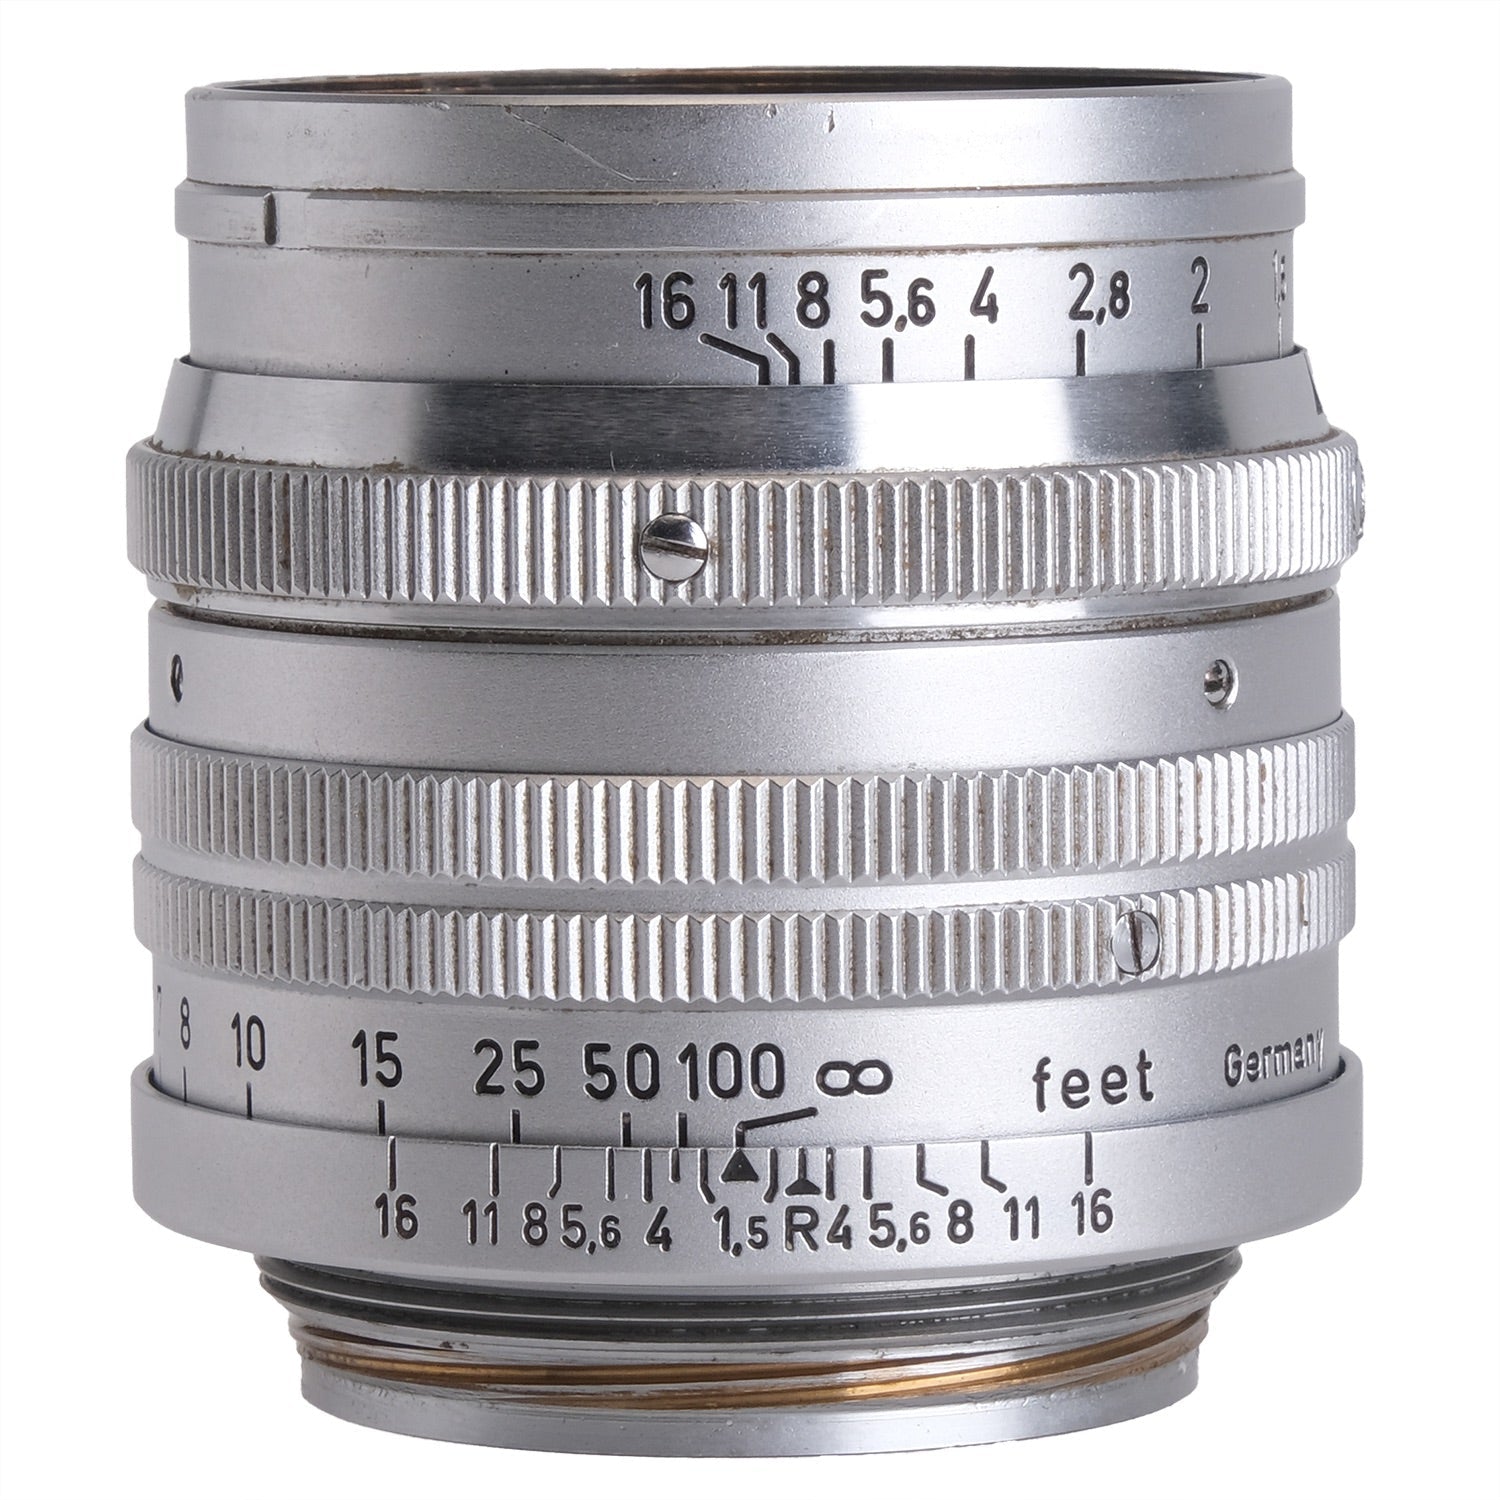 Leica 5cm f1.5 Summarit 952219